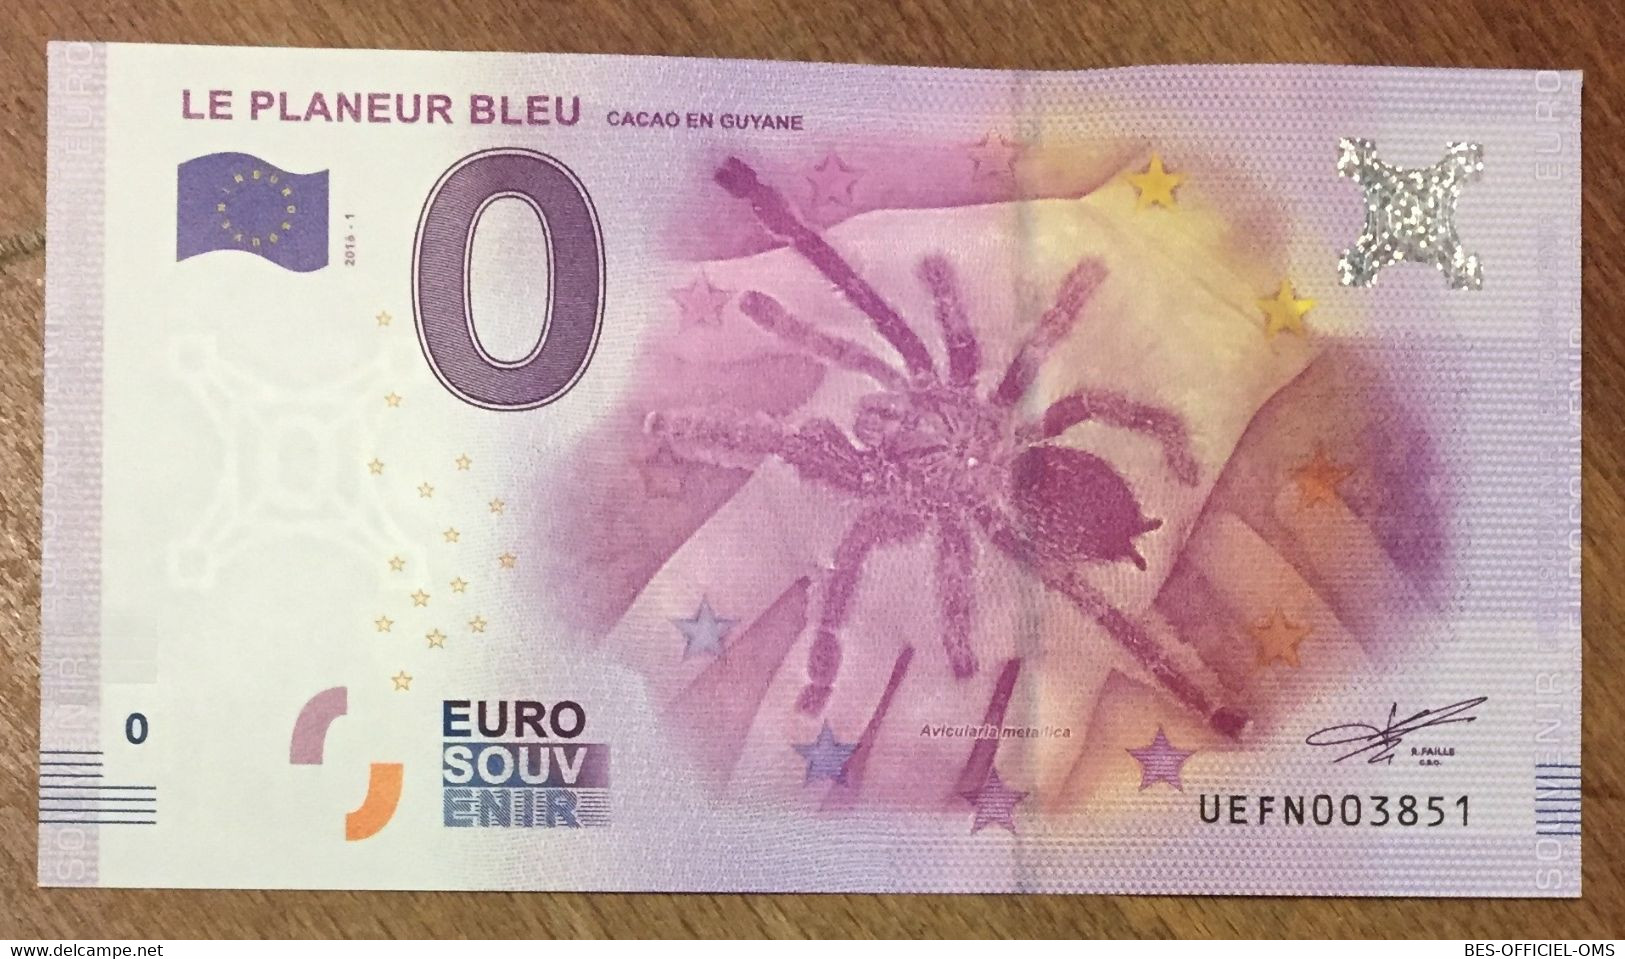 2016 BILLET 0 EURO SOUVENIR DPT 97 LE PLANEUR BLEU CACAO EN GUYANE ZERO 0 EURO SCHEIN BANKNOTE PAPER MONEY - Private Proofs / Unofficial